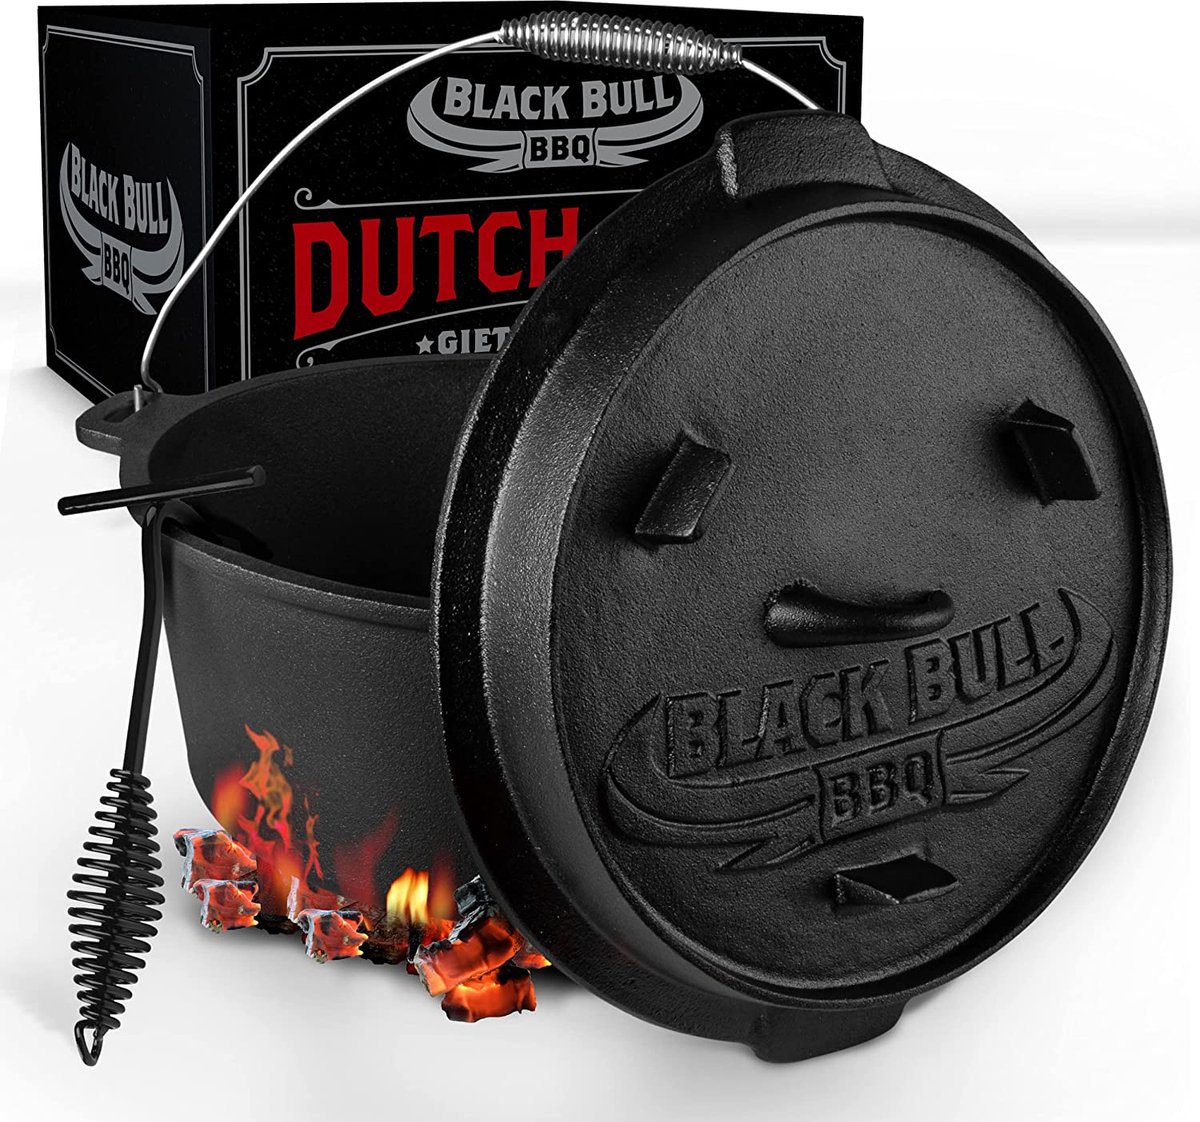 Black Bull BBQ Dutch oven set [7L] - Ingebrande vuurpot van gietijzer met voeten & deksel - Met spiraalgreep voor optimale houvast - incl. deksellifter